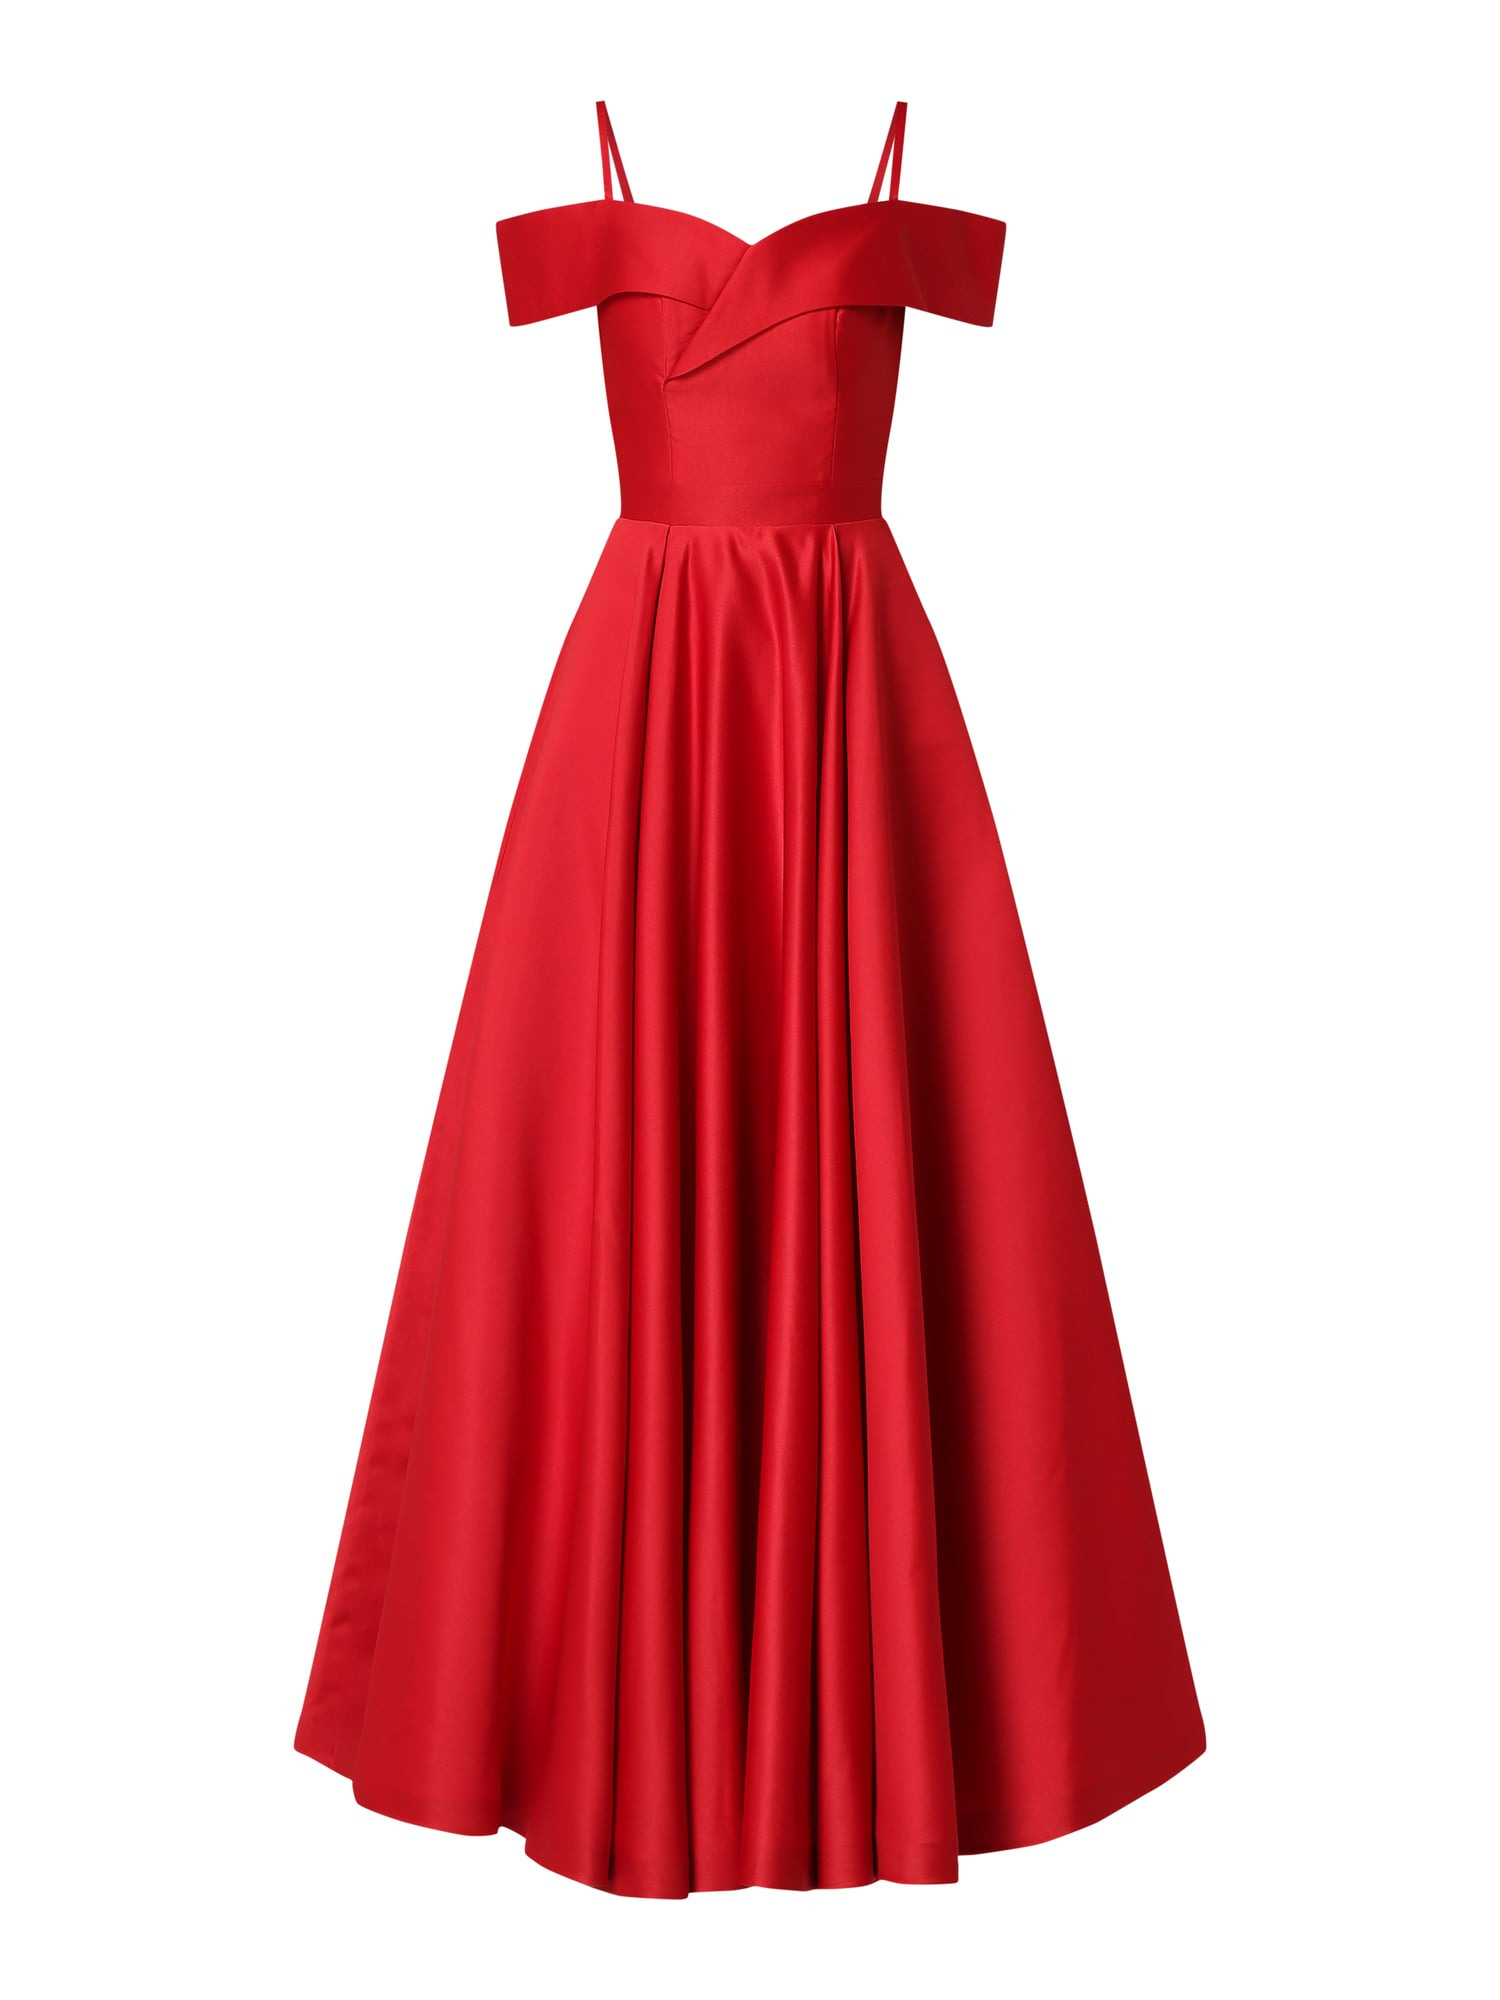 Abend Schön Abendkleid In Rot für 2019Designer Leicht Abendkleid In Rot Design